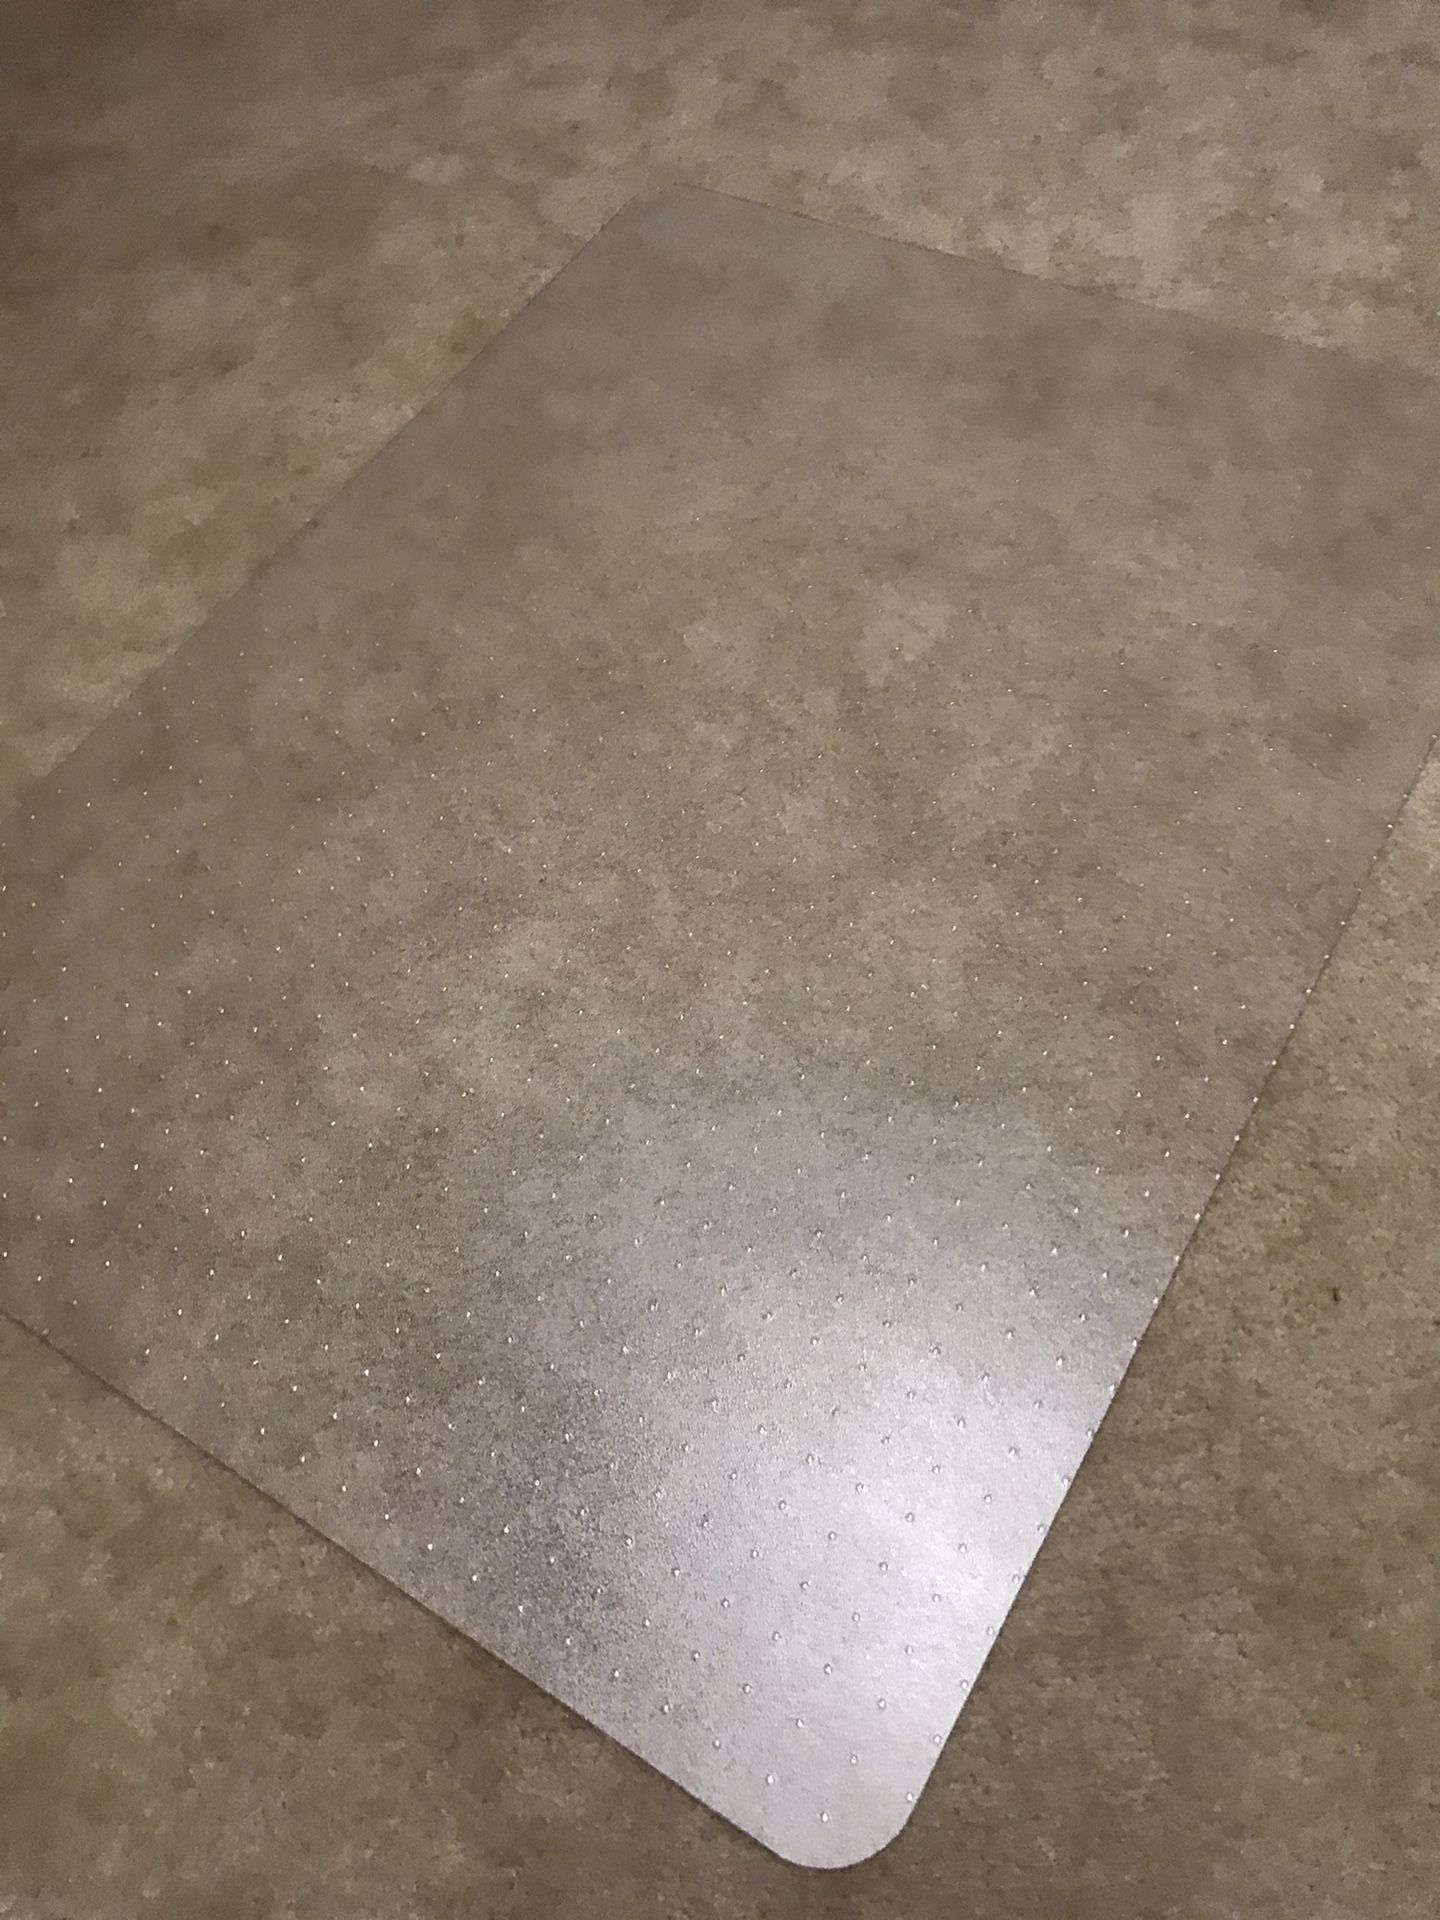 Office carpet chair mat- polycarbonate